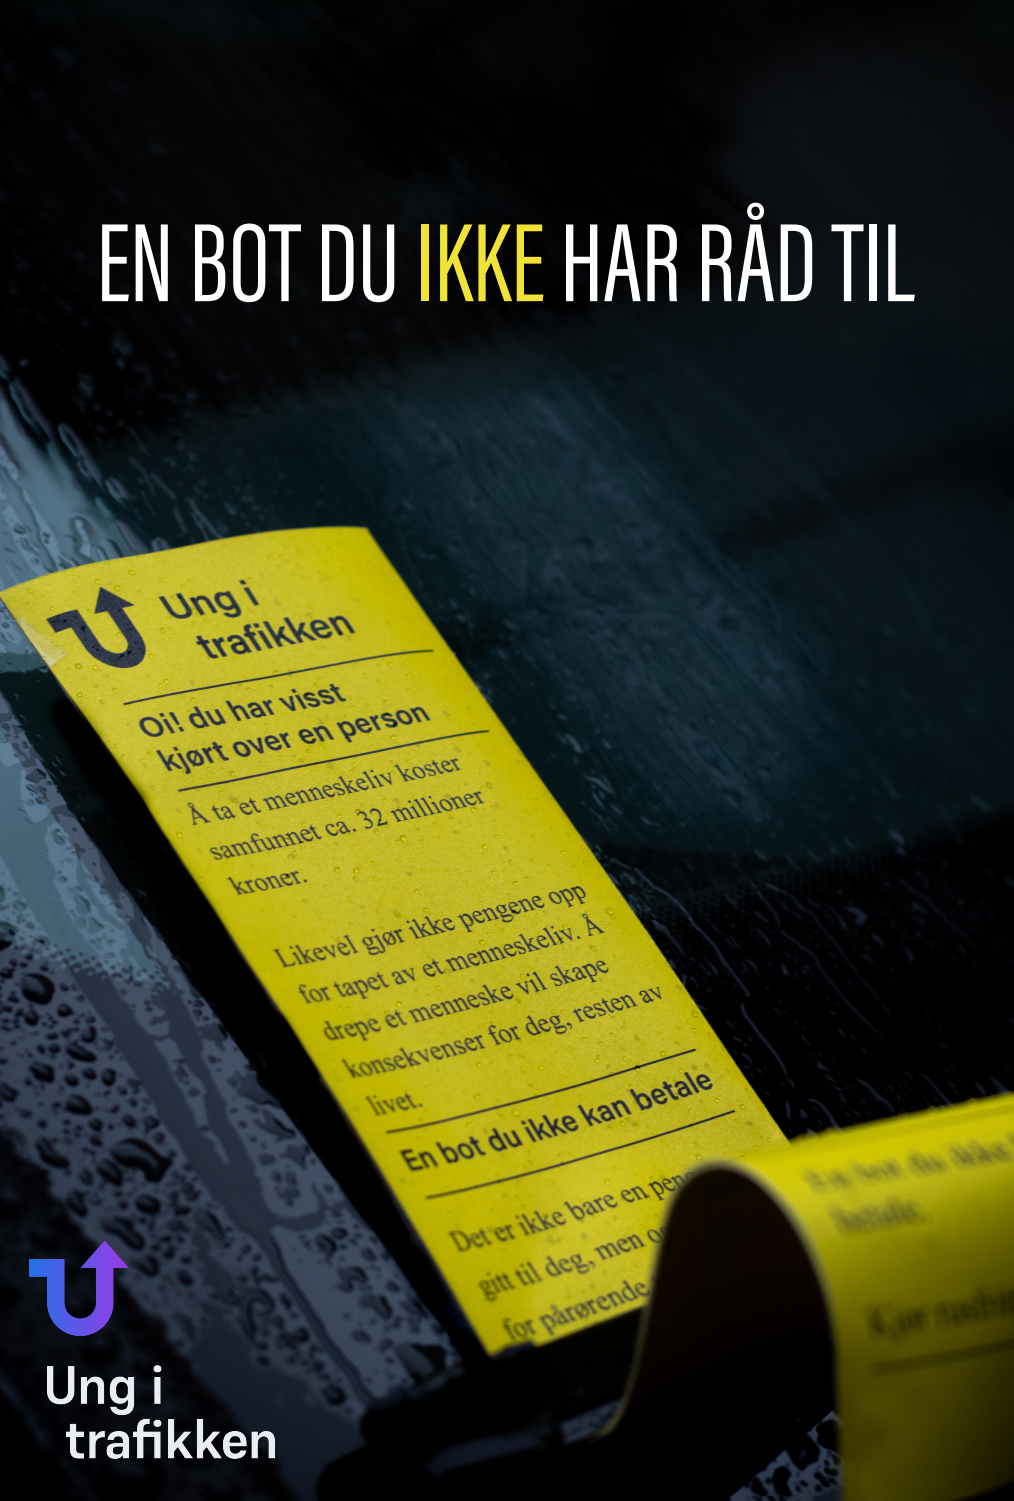 Utsnitt av en gul bot som ligger i frontruta på en bil. Teksten "En bot du ikke har råd til" vises over. Knyttet til menneskeliv tapt i trafikken.